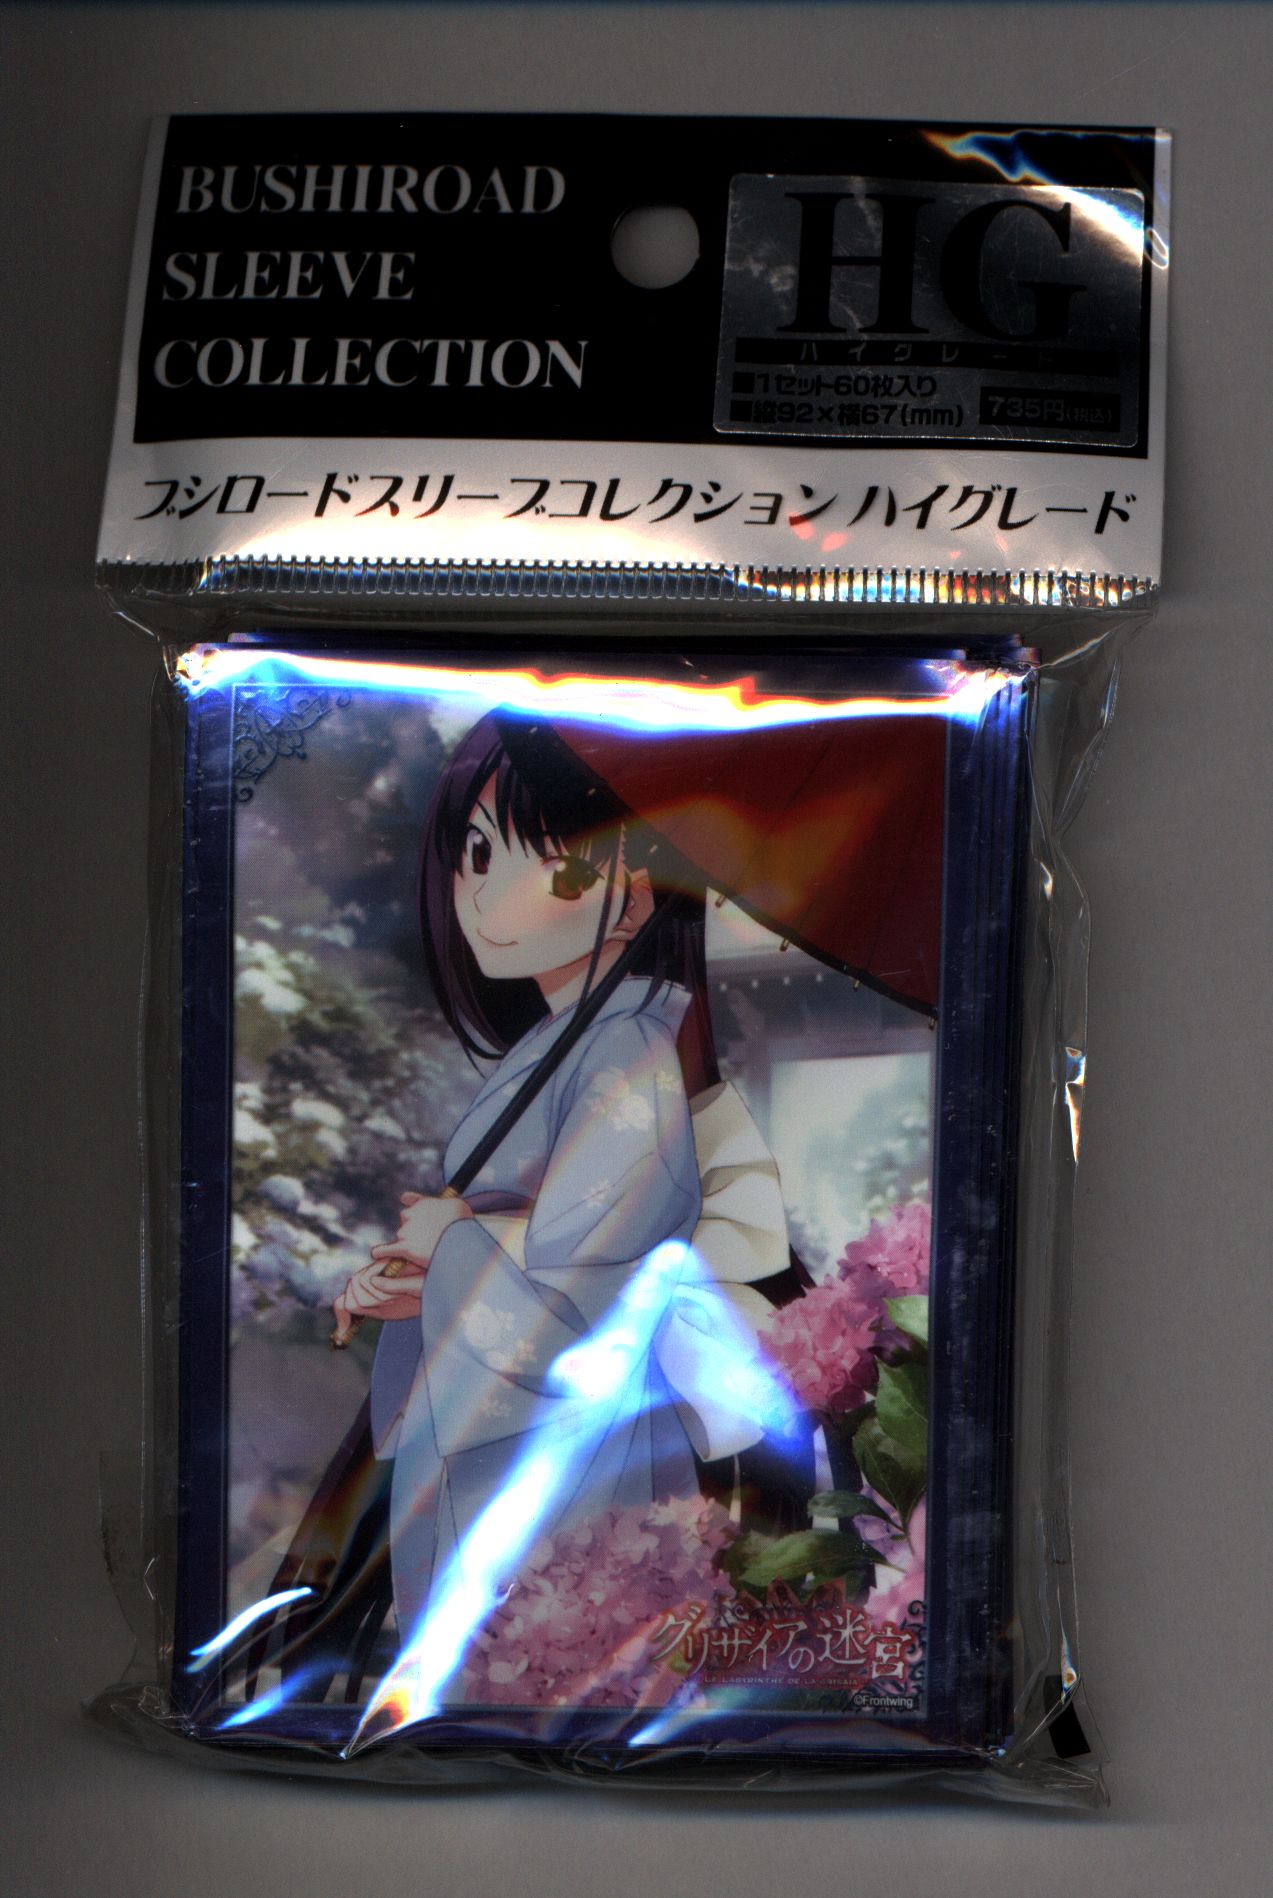 Bushiroad Sleeve Collection HG Vol.224: Grisaia no Meikyuu - Yumiko Sakaki  (60-Pack) - Bushiroad Card Sleeves - Card Sleeves